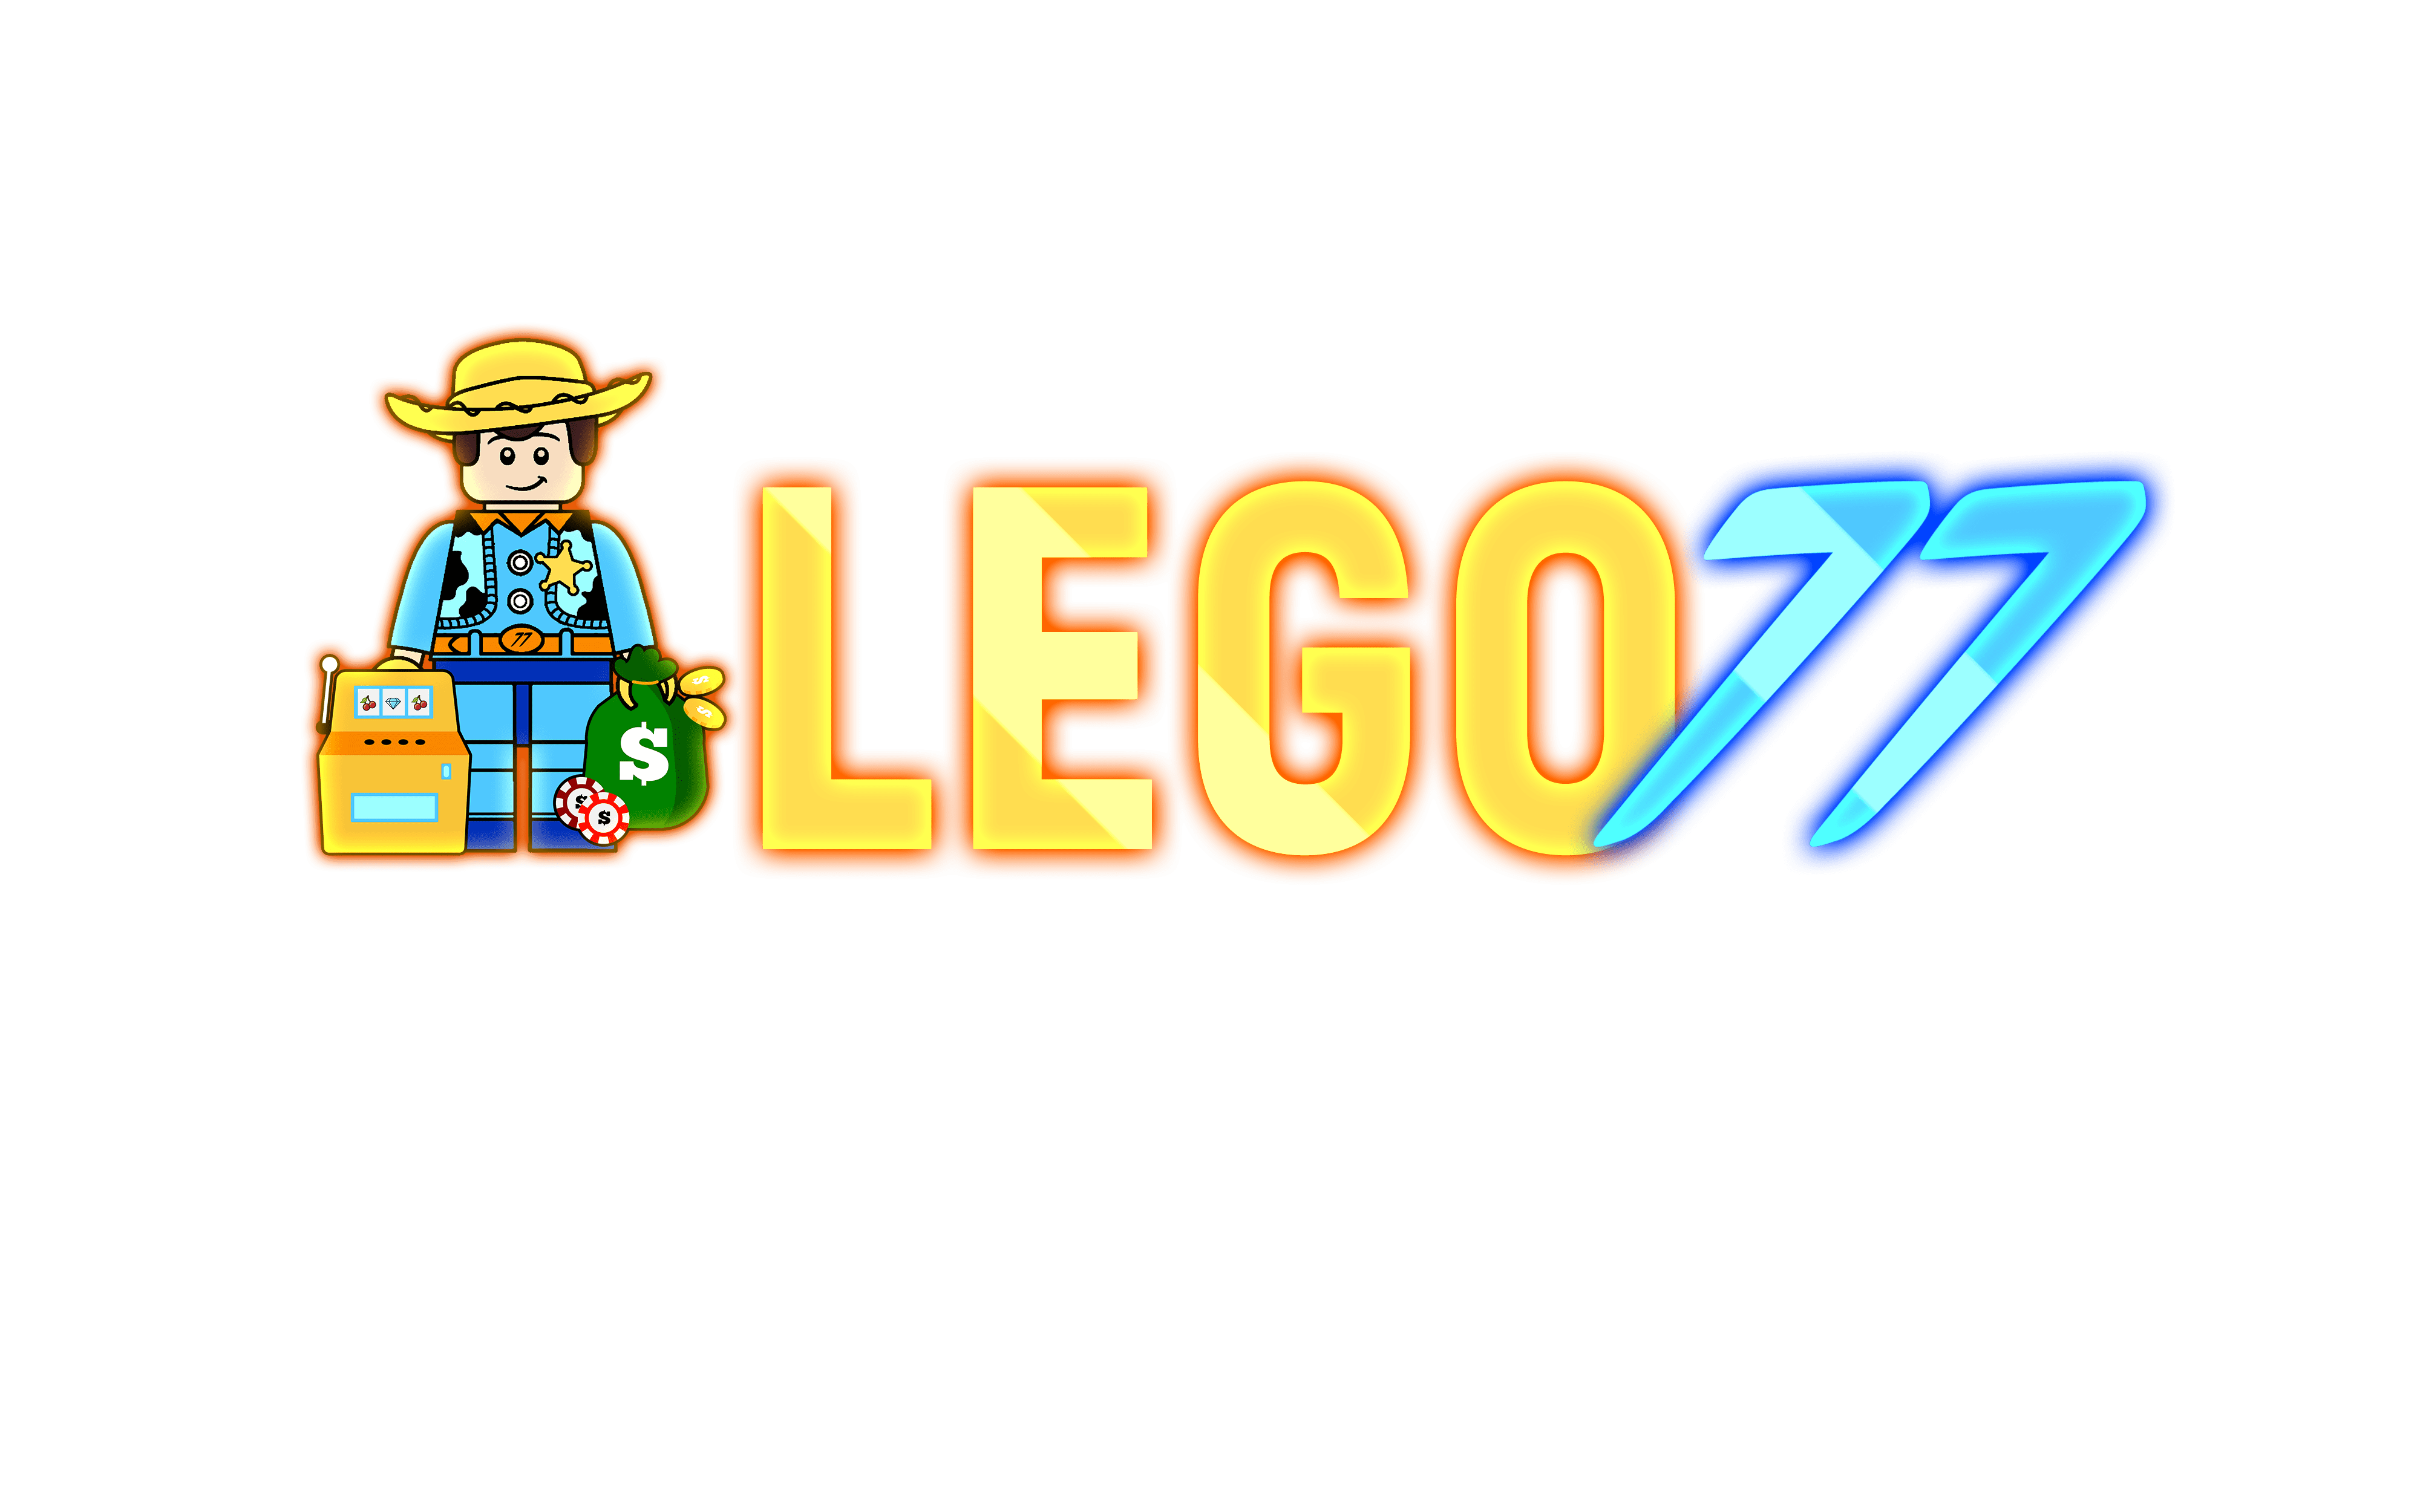 LEGO77